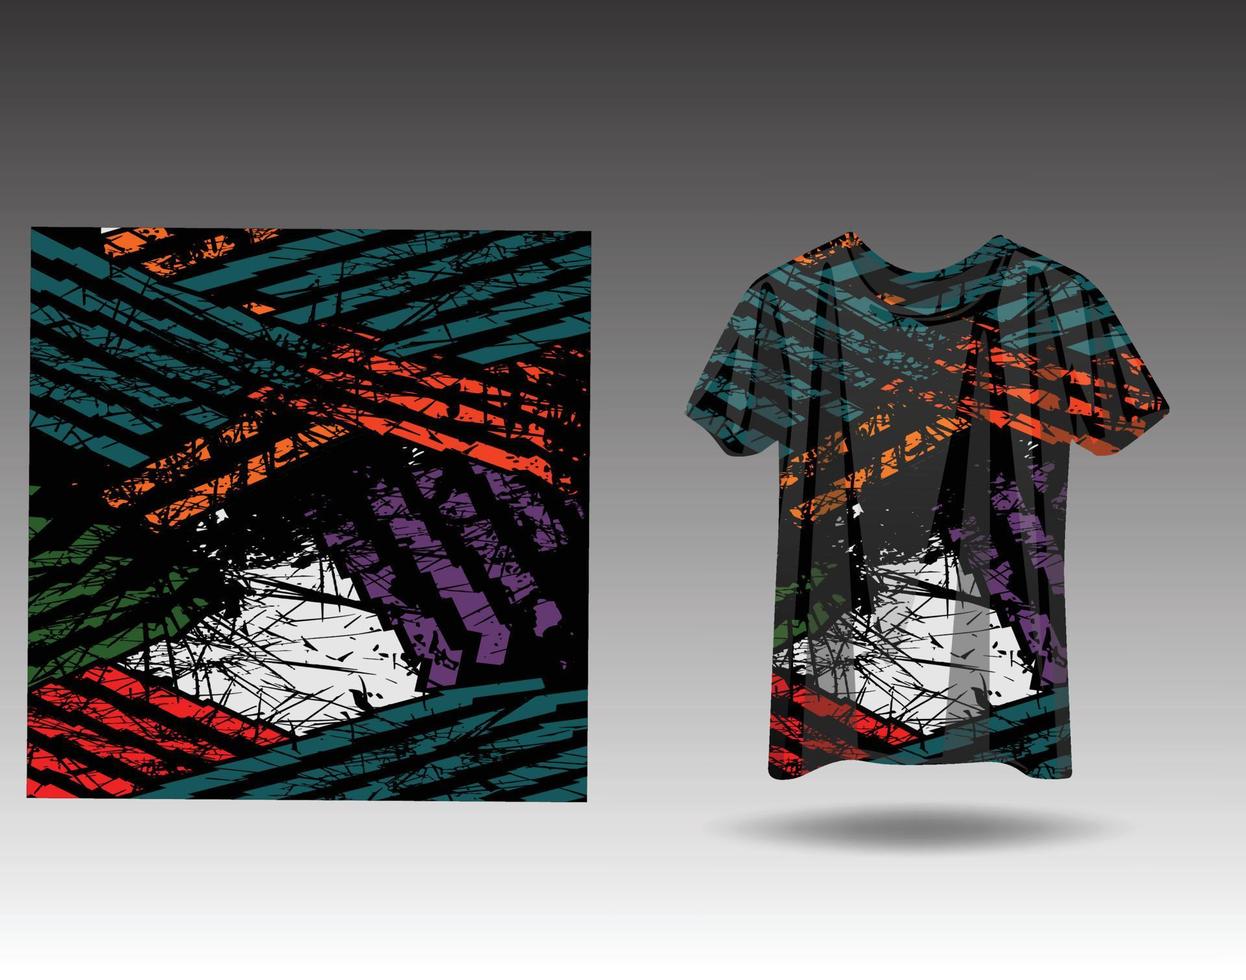 T-Shirt Sportdesign für Rennen, Trikot, Radfahren, Fußball, Gaming vektor